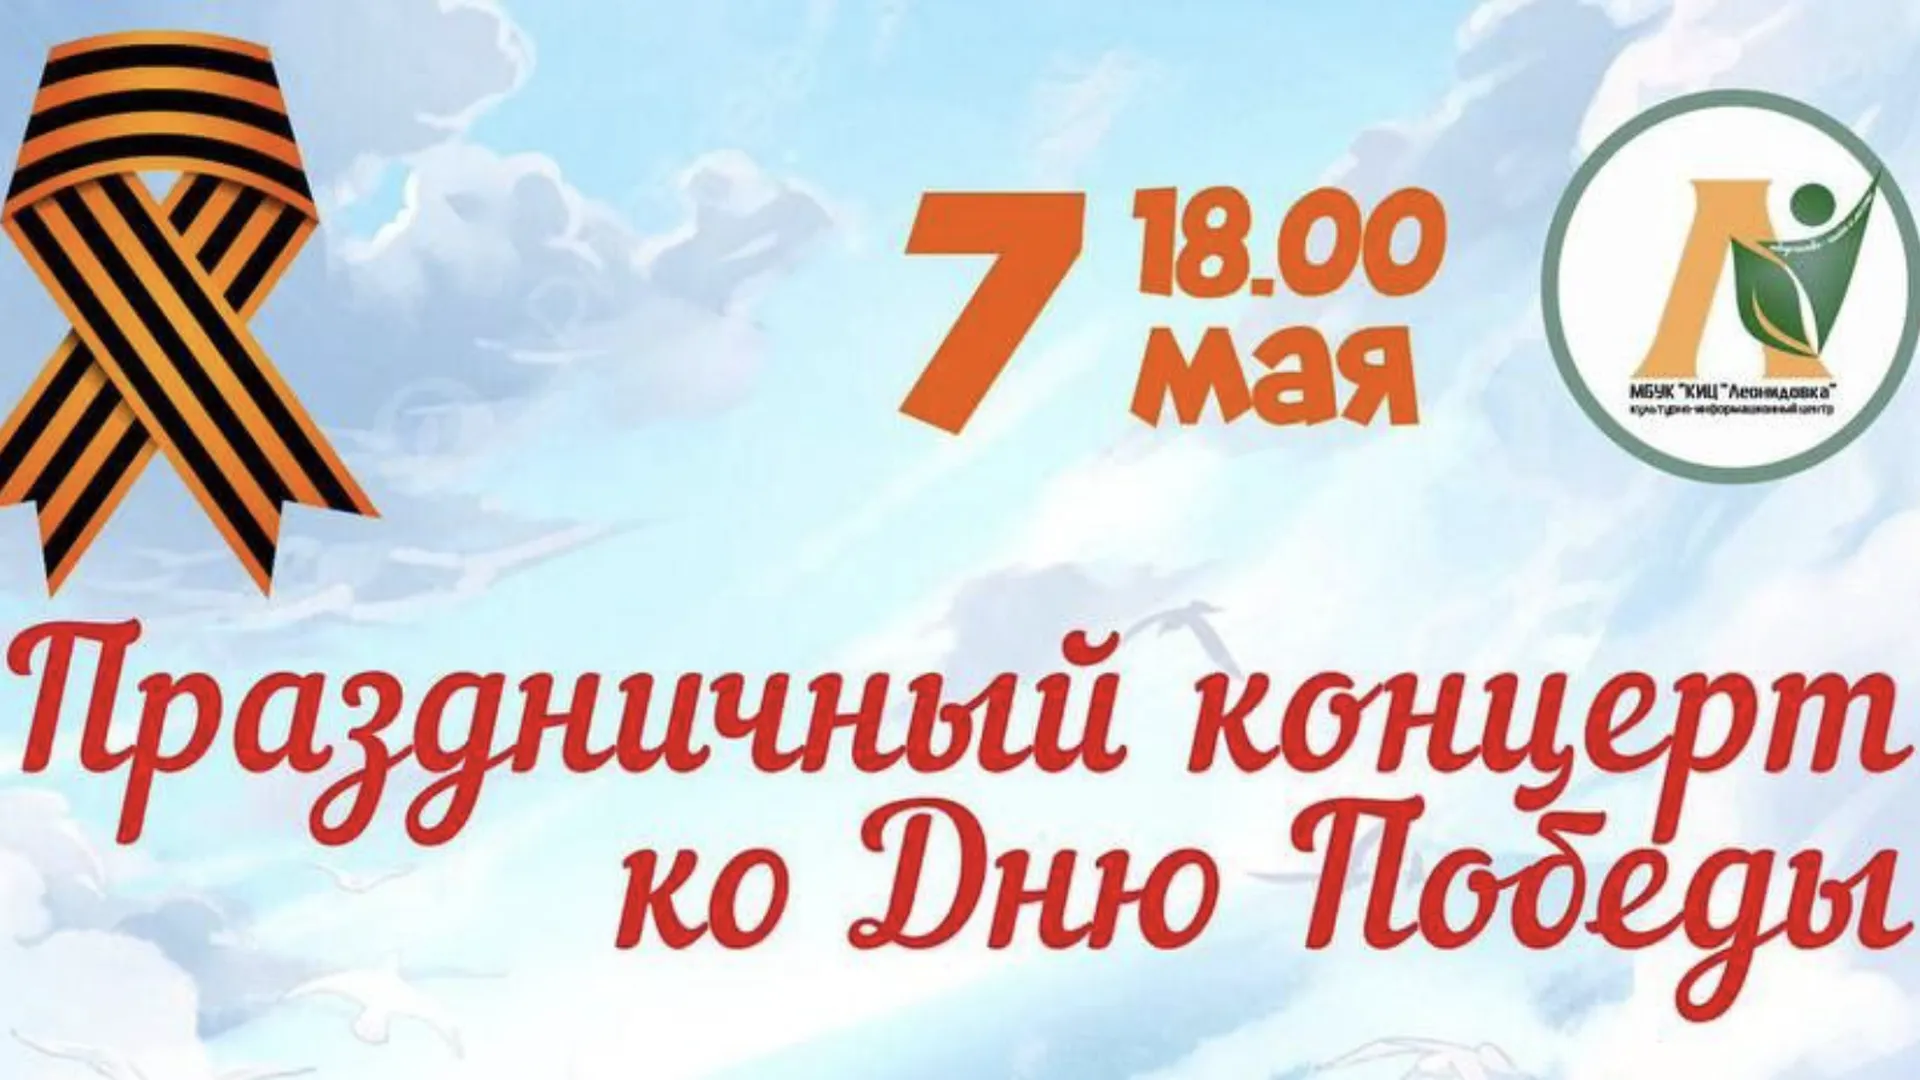 Патриотический концерт состоится в Мытищах 7 мая